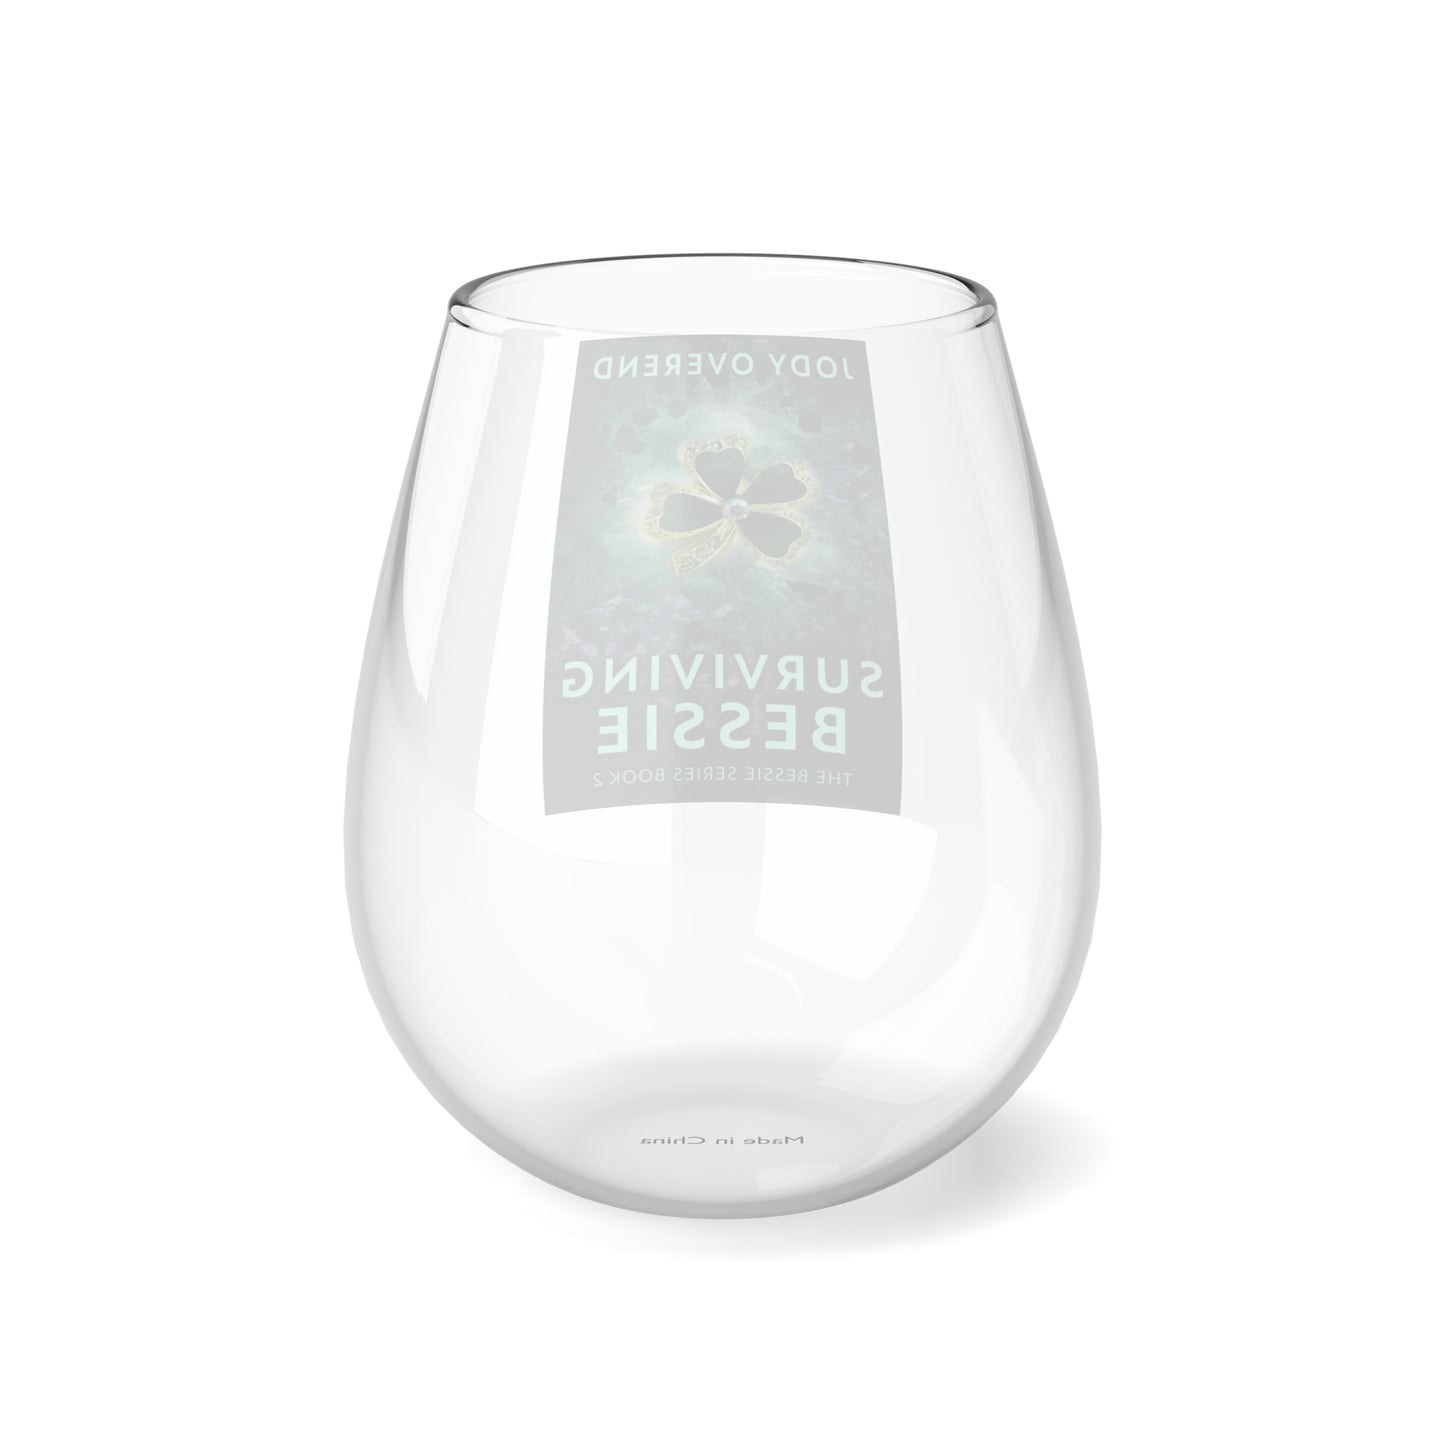 Surviving Bessie - Stemless Wine Glass, 11.75oz